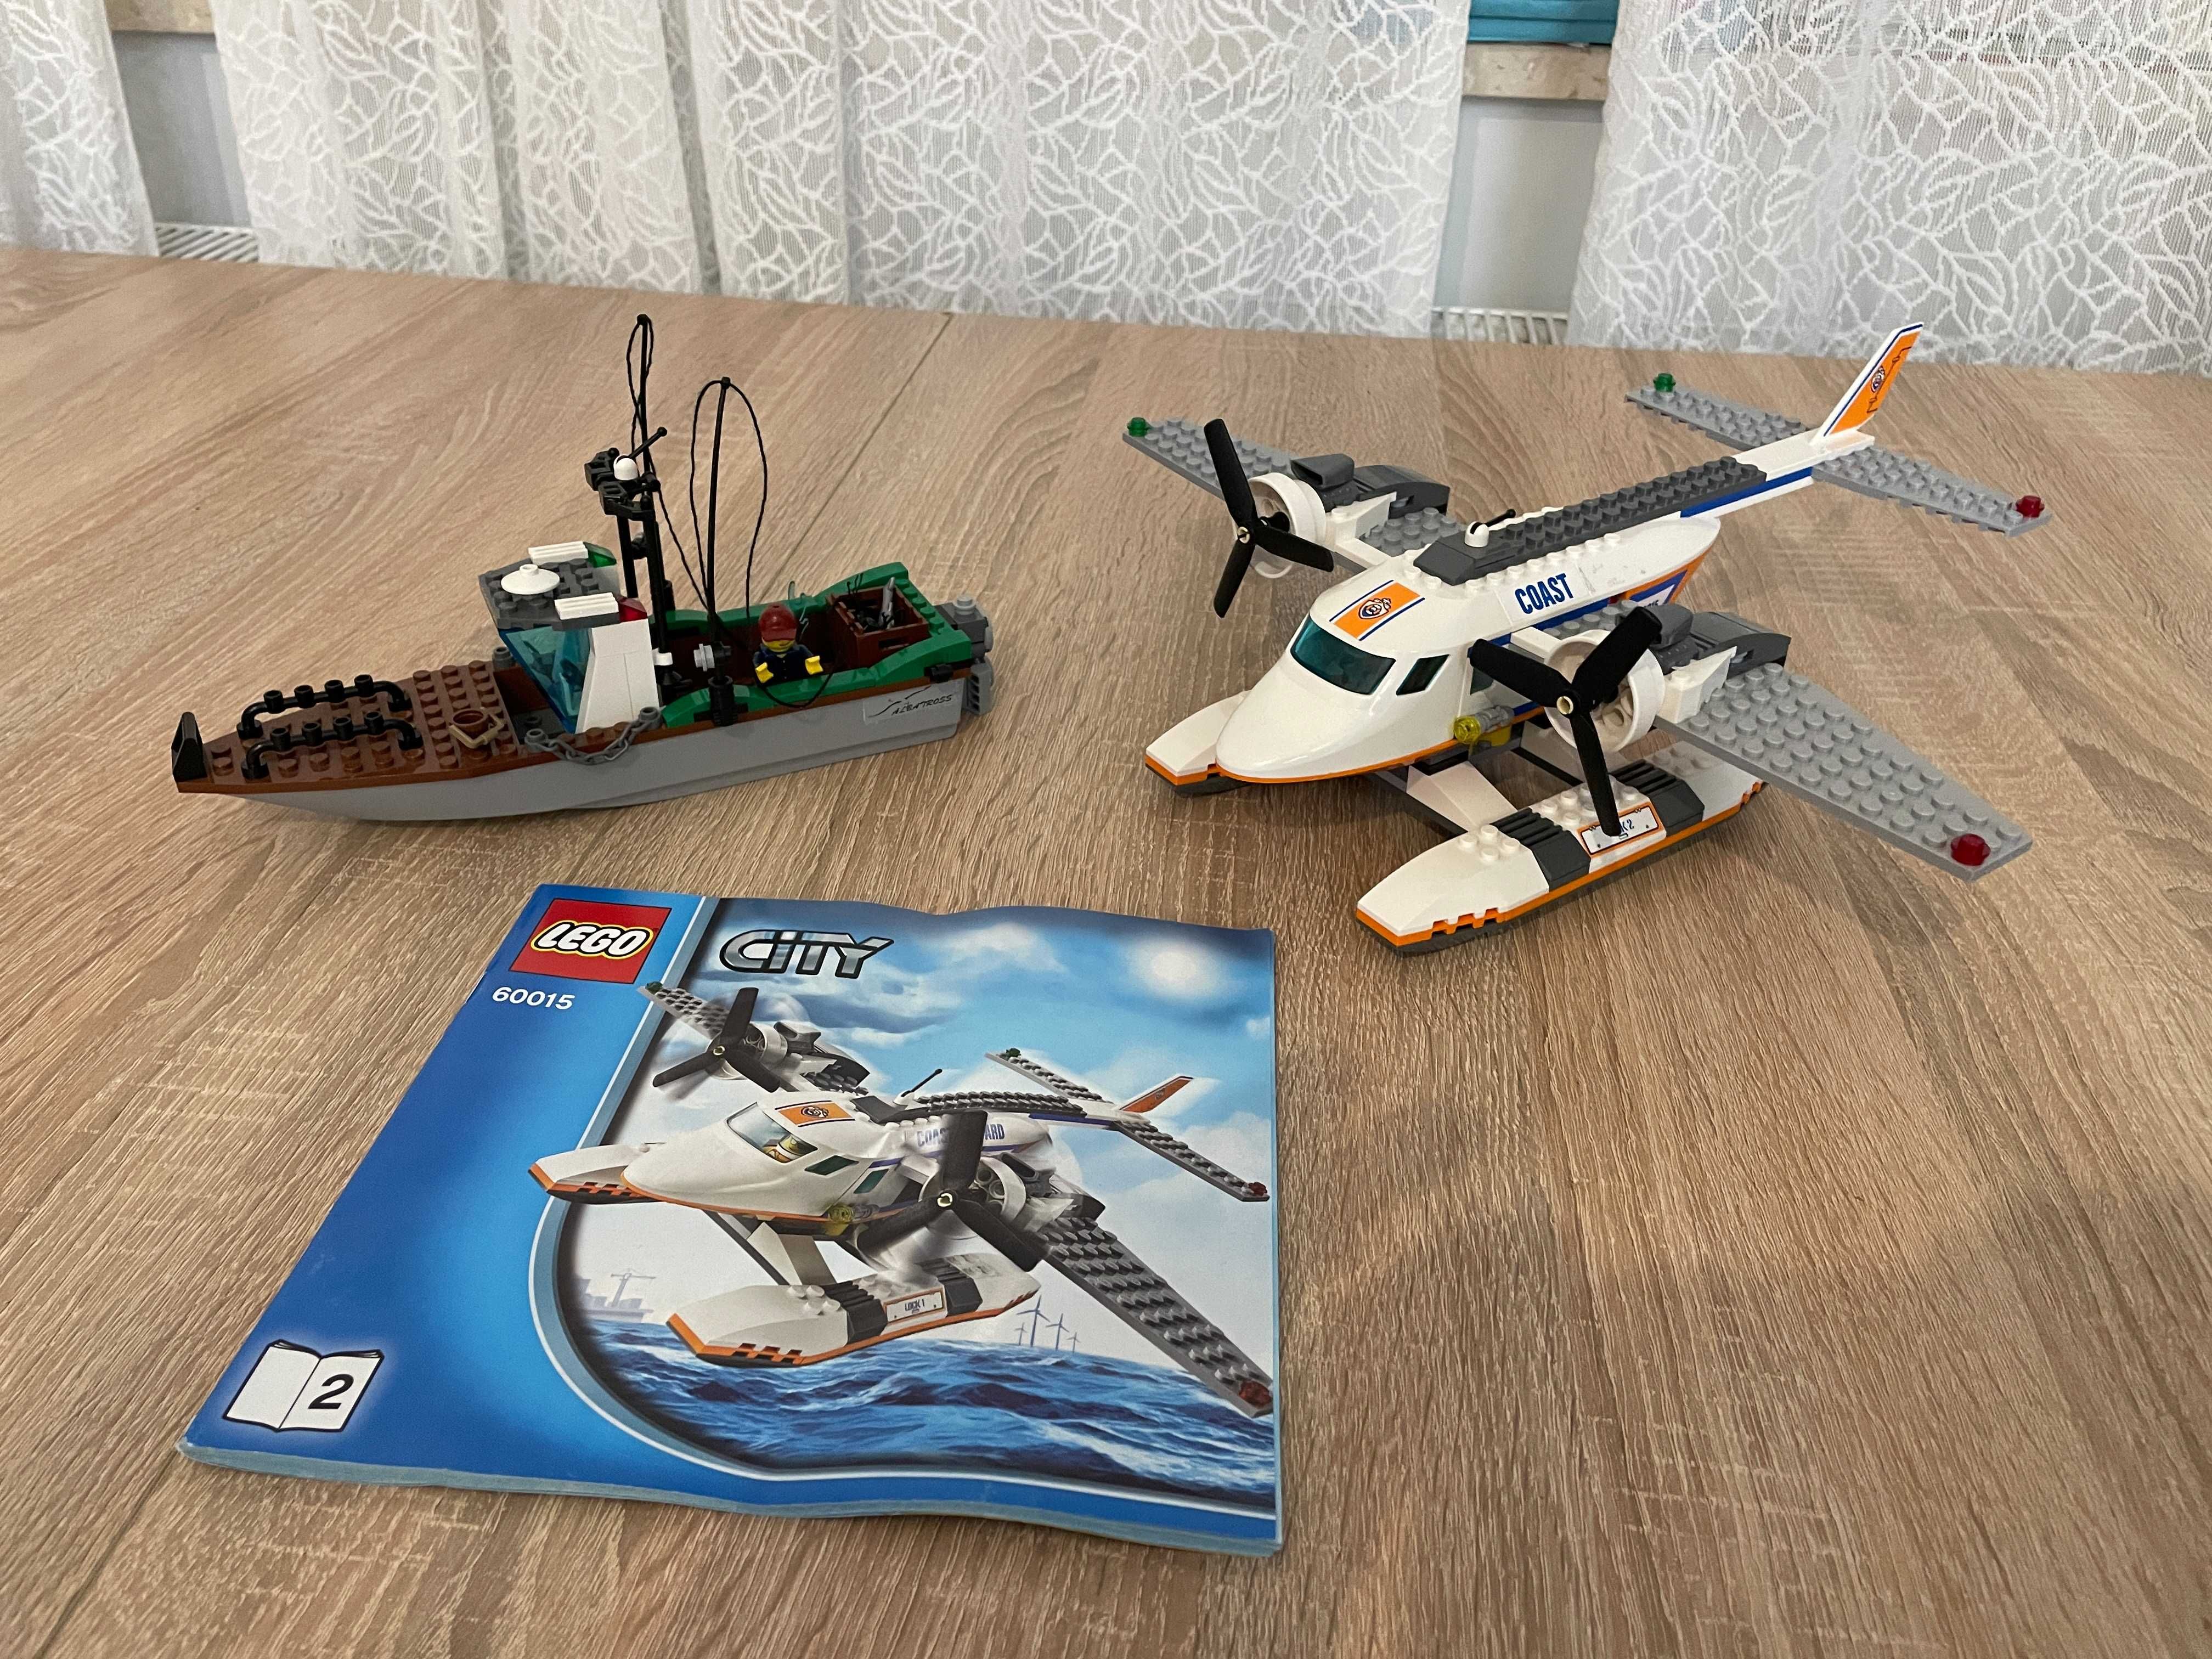 LEGO City 60015 Samolot straży przybrzeżnej